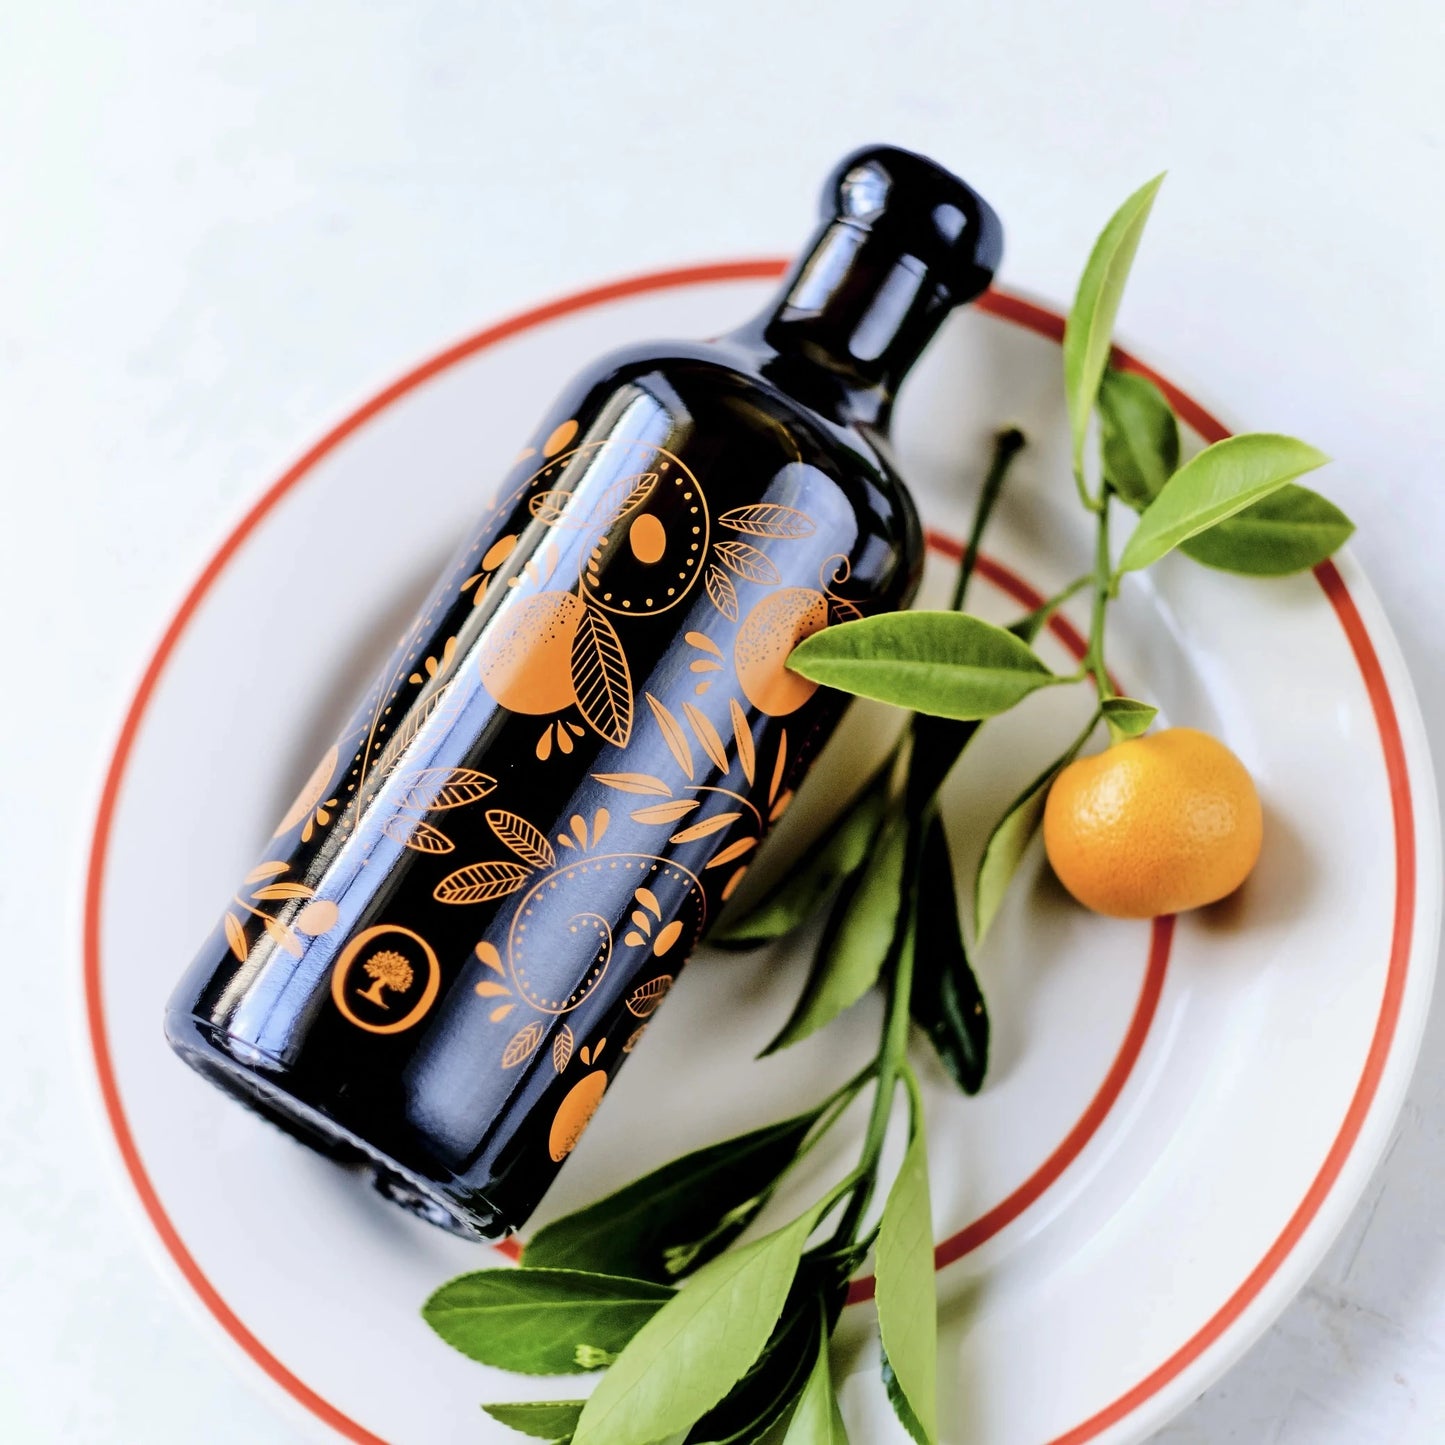 flasche mit olivenöl mit mandarinenaroma, verziert mit orangen mustern, liegend auf einem teller mit roten rand, neben einer frischen mandarine und grünen blättern